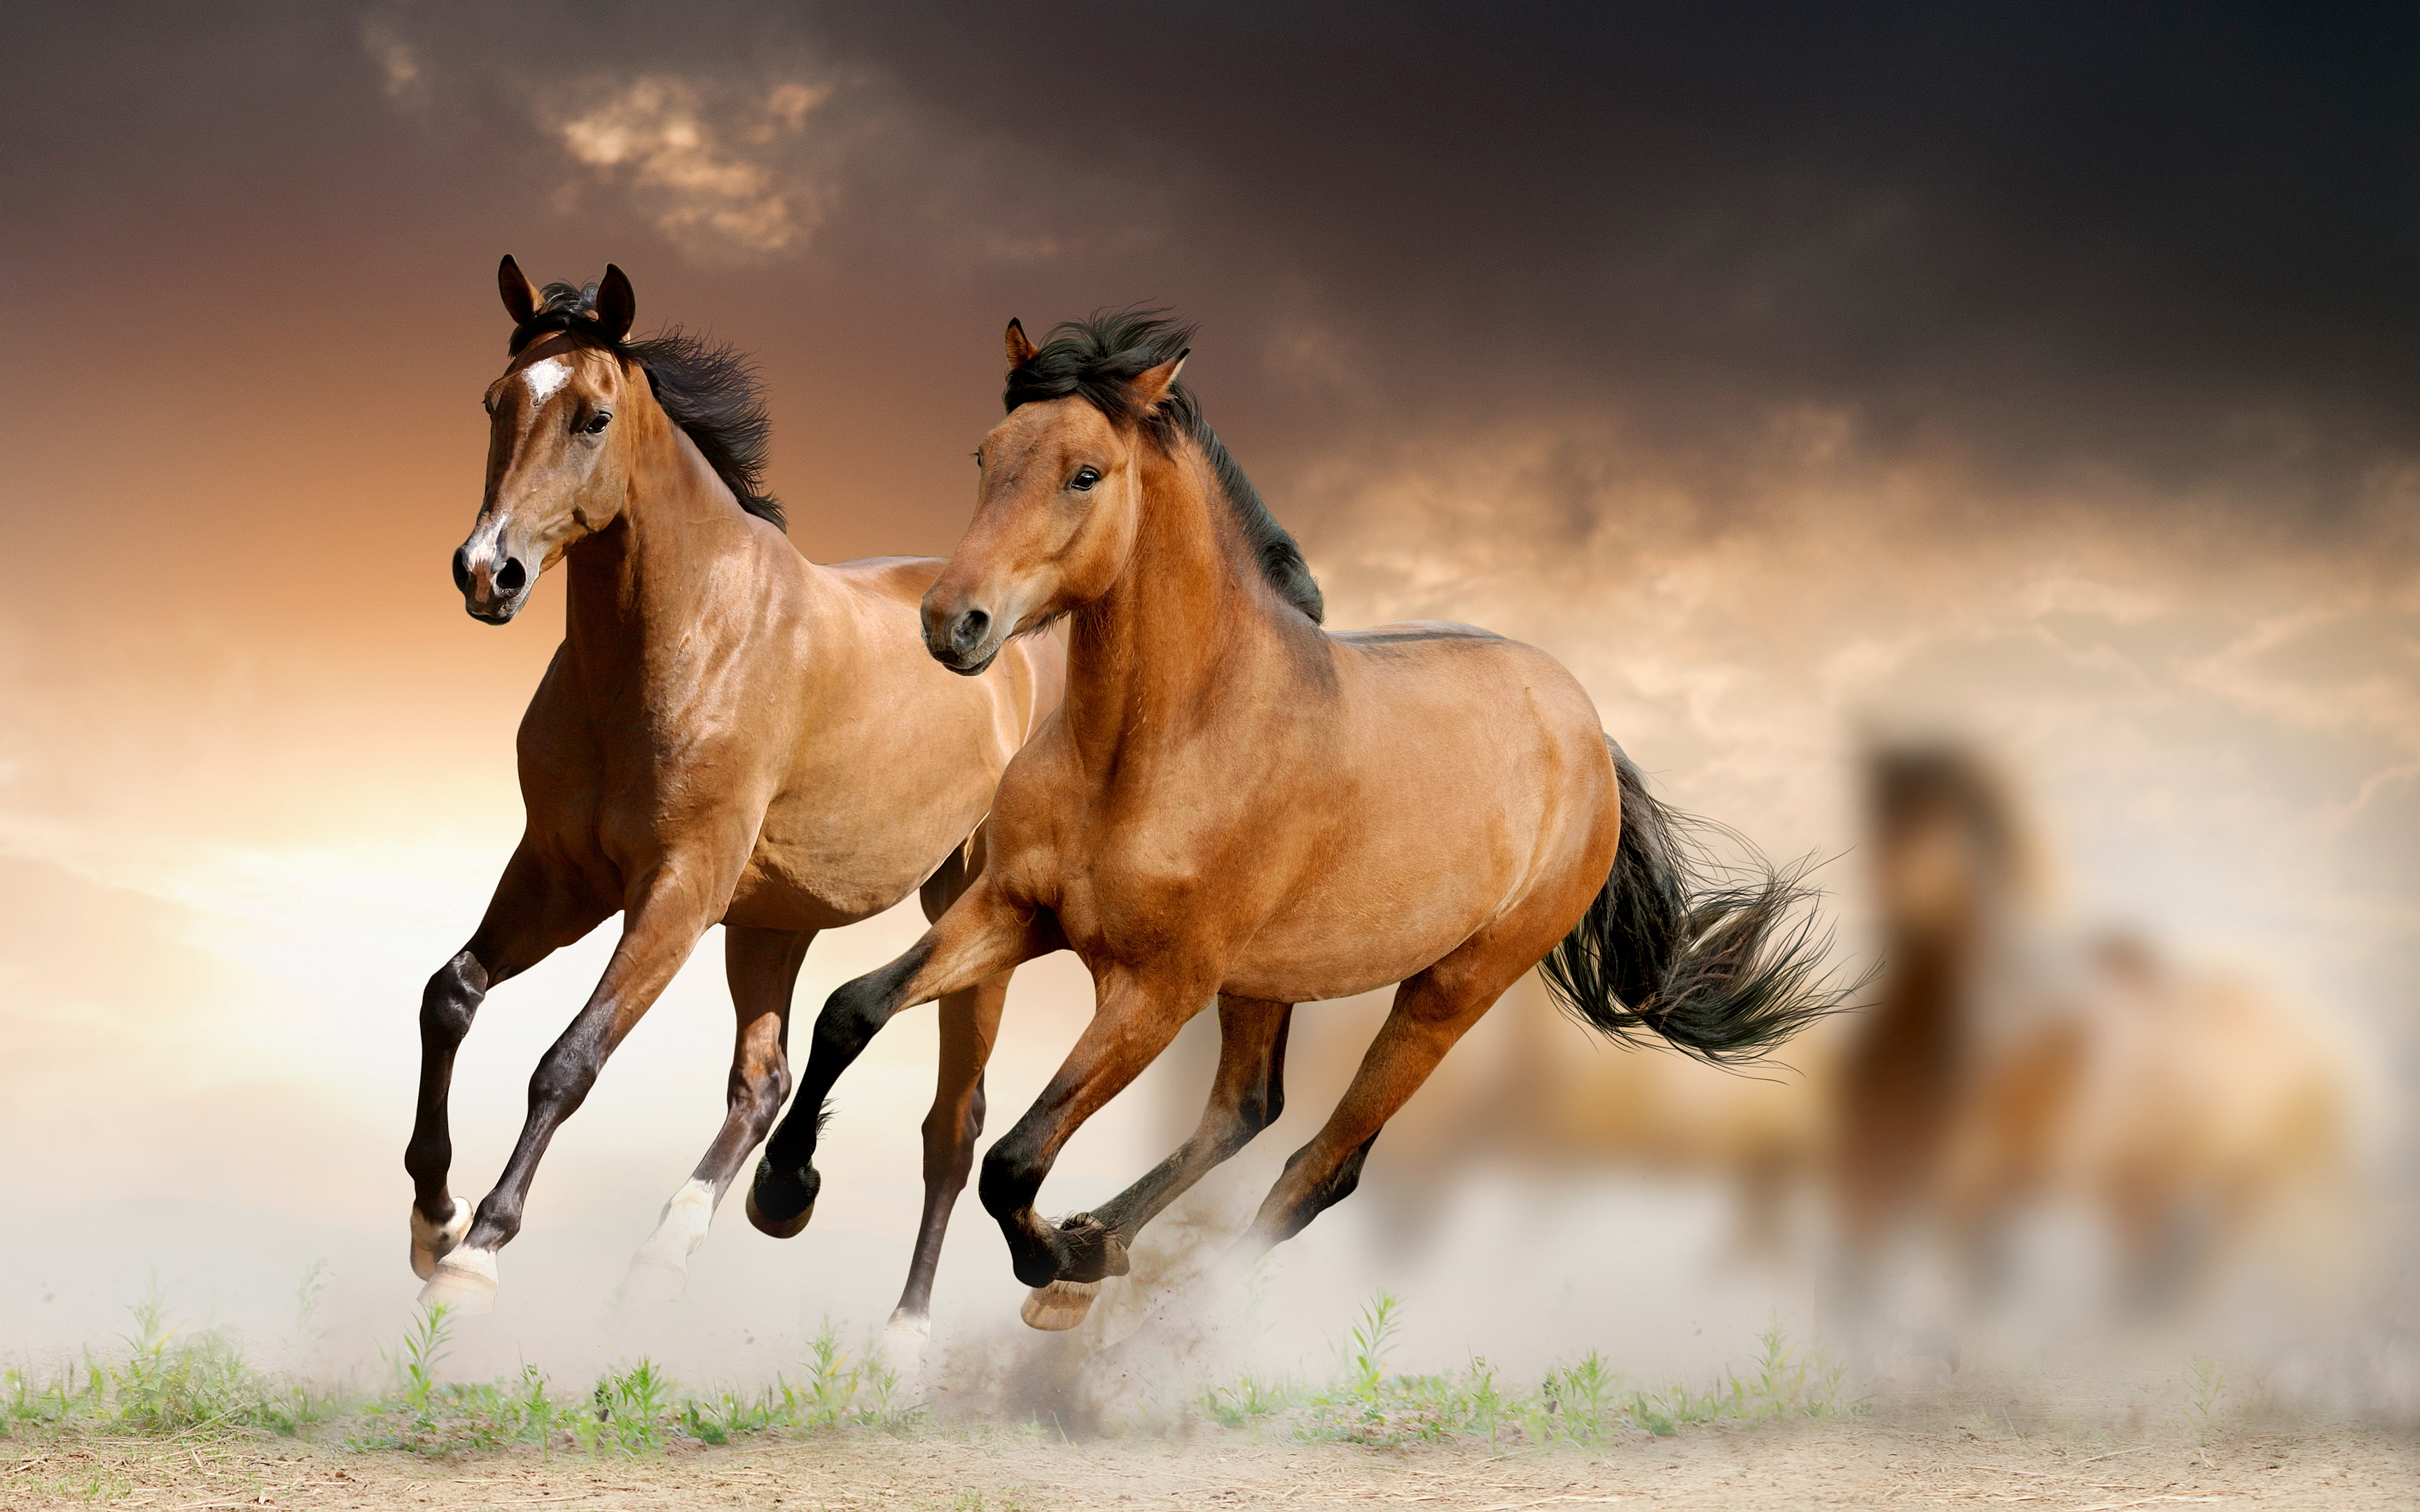 اجمل الصور حصان في العالم , صور خيول جميلة وخلفيات روعة | صقور الإبدآع